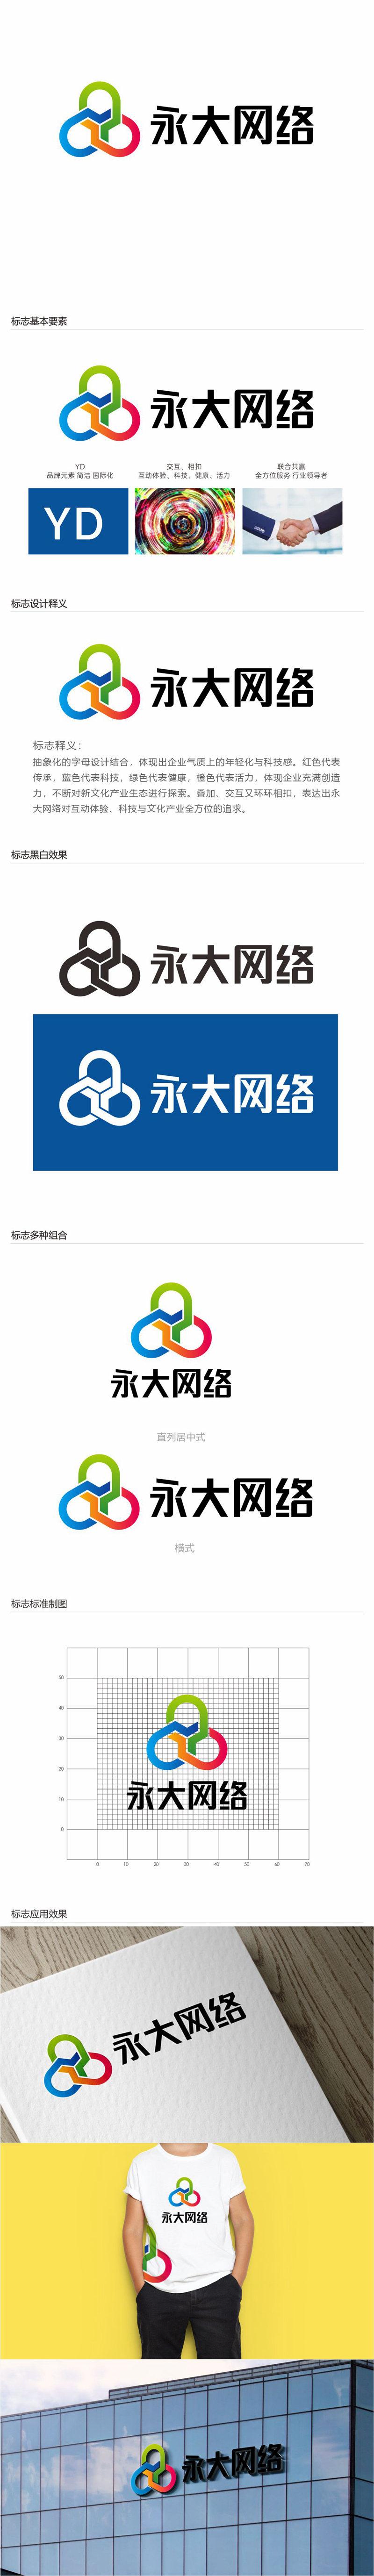 唐国强的永大网络logo设计